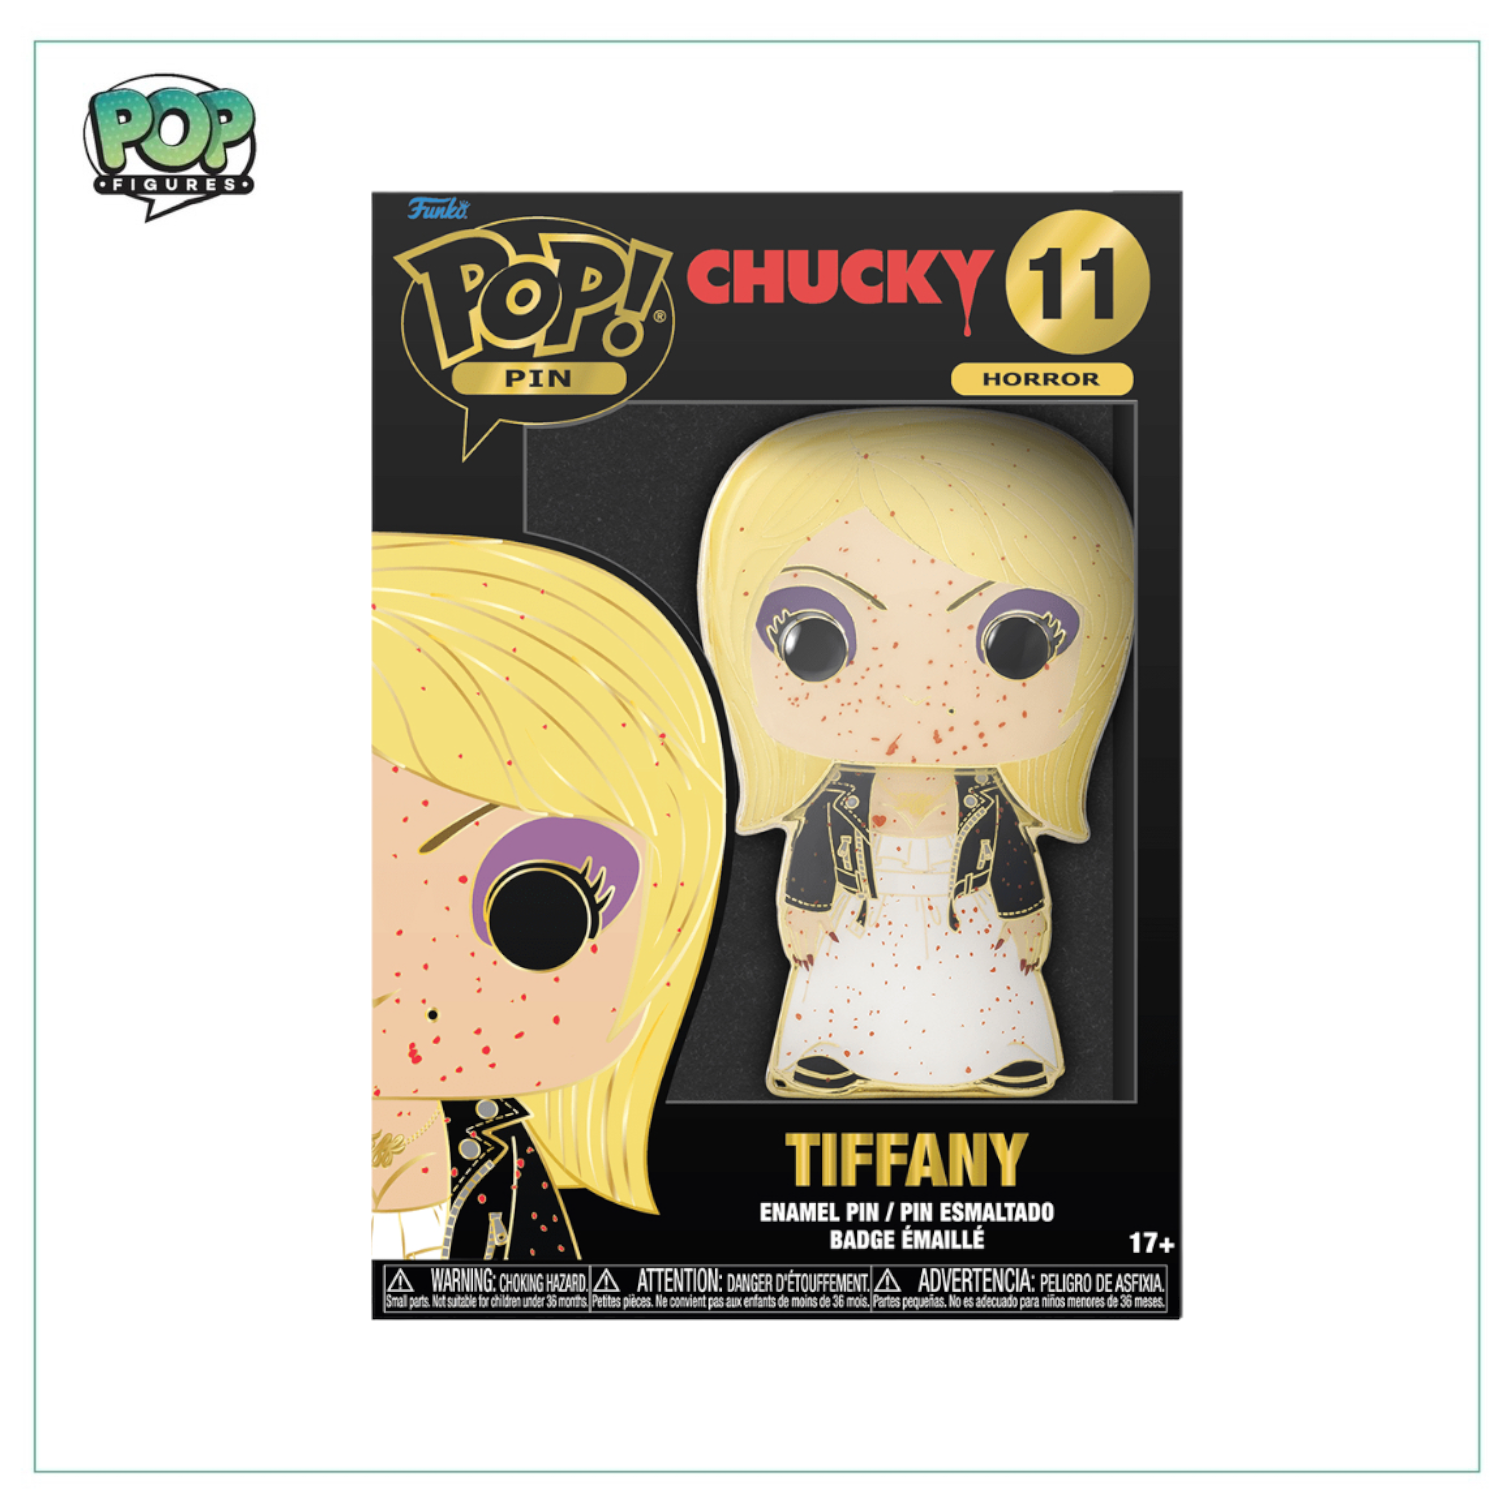 Tiffany #11 Funko Enamel Pop Pin! - Chucky